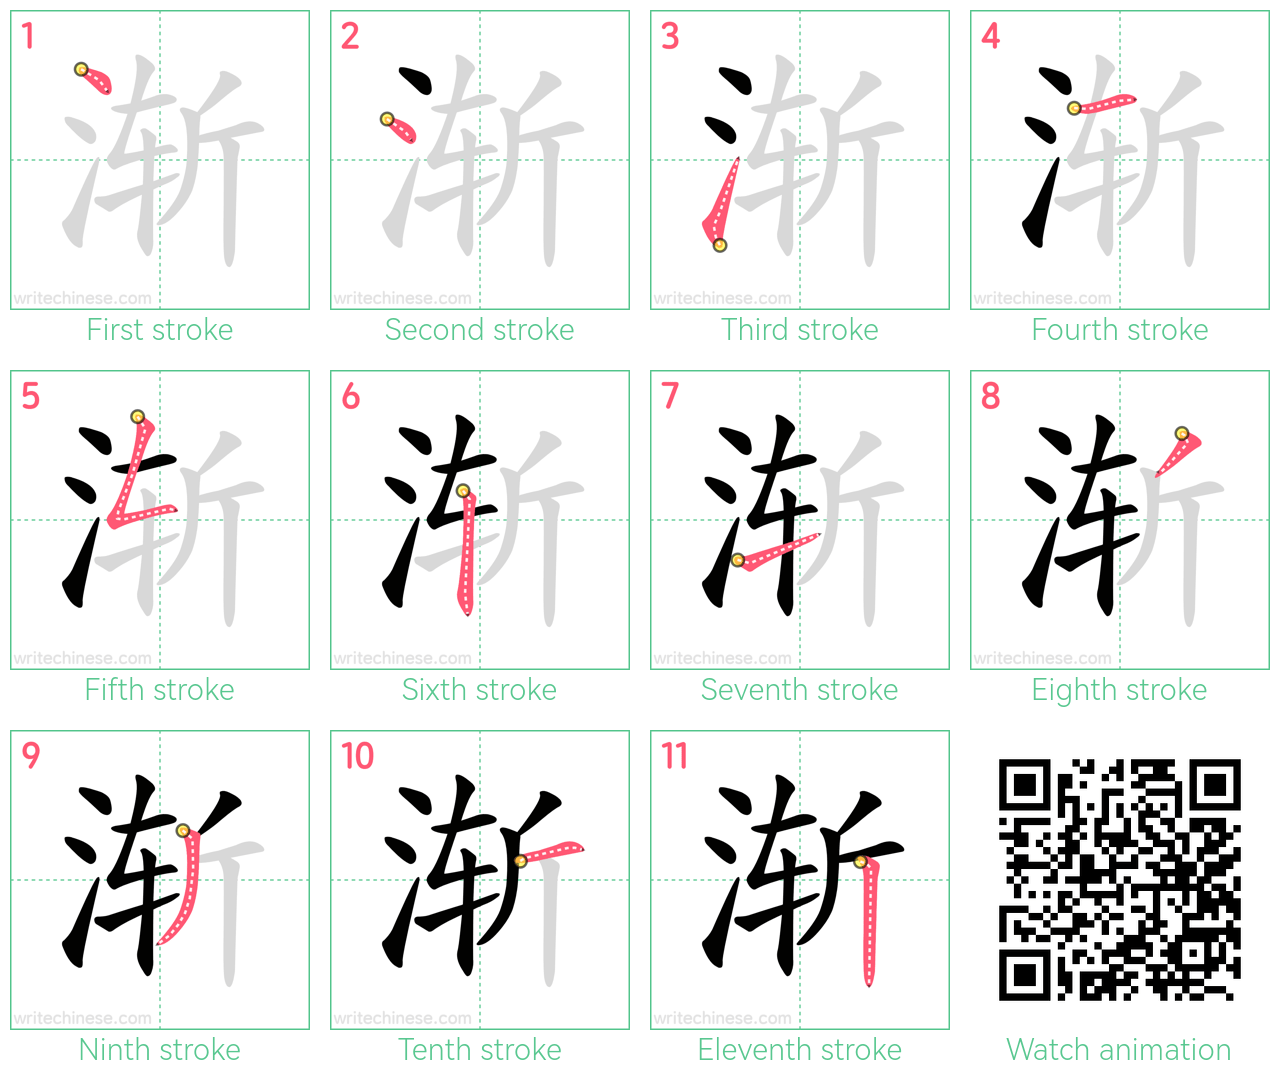 渐 step-by-step stroke order diagrams